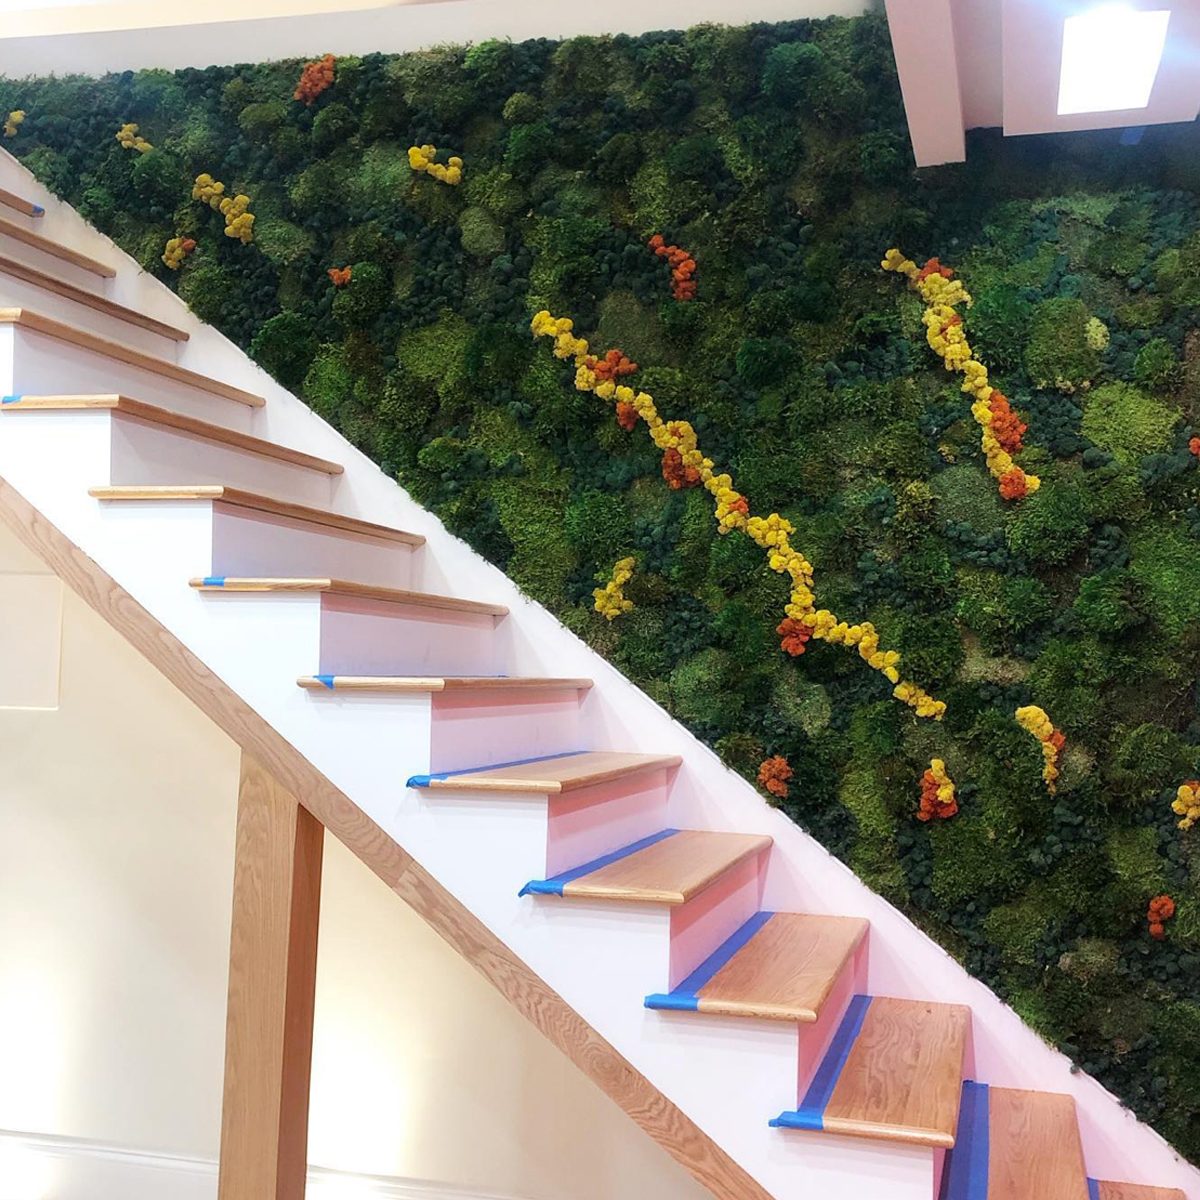 Stairwell Vertical Garden Courtesy @normanleigh Via Instagram